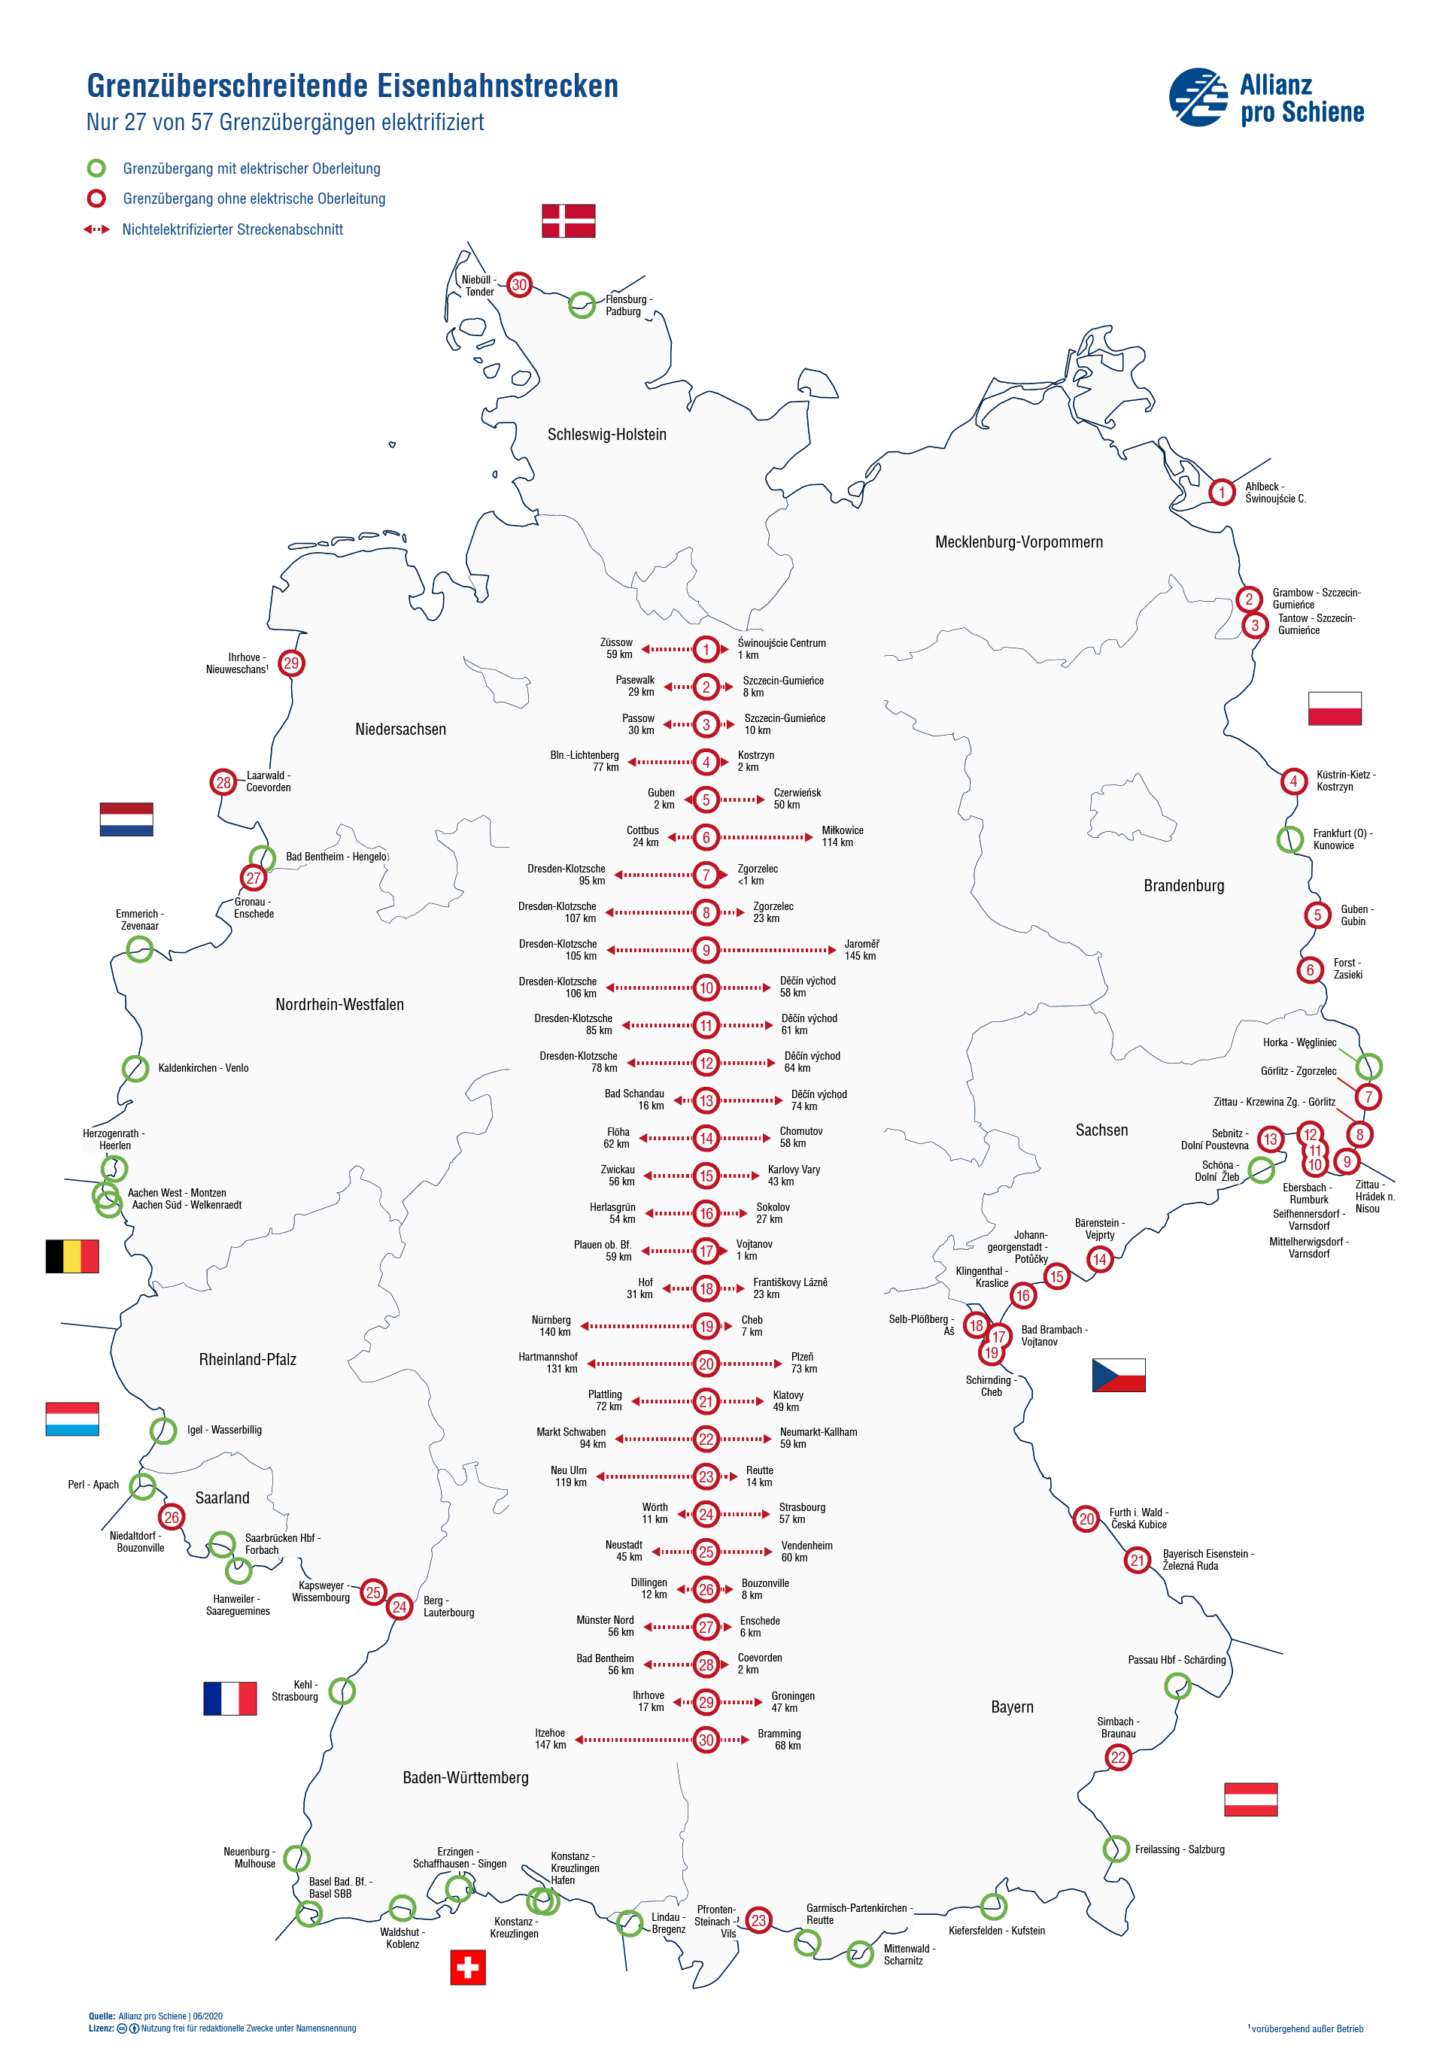 Schienennetz Deutschland: Die Bahnstrecken im Überblick